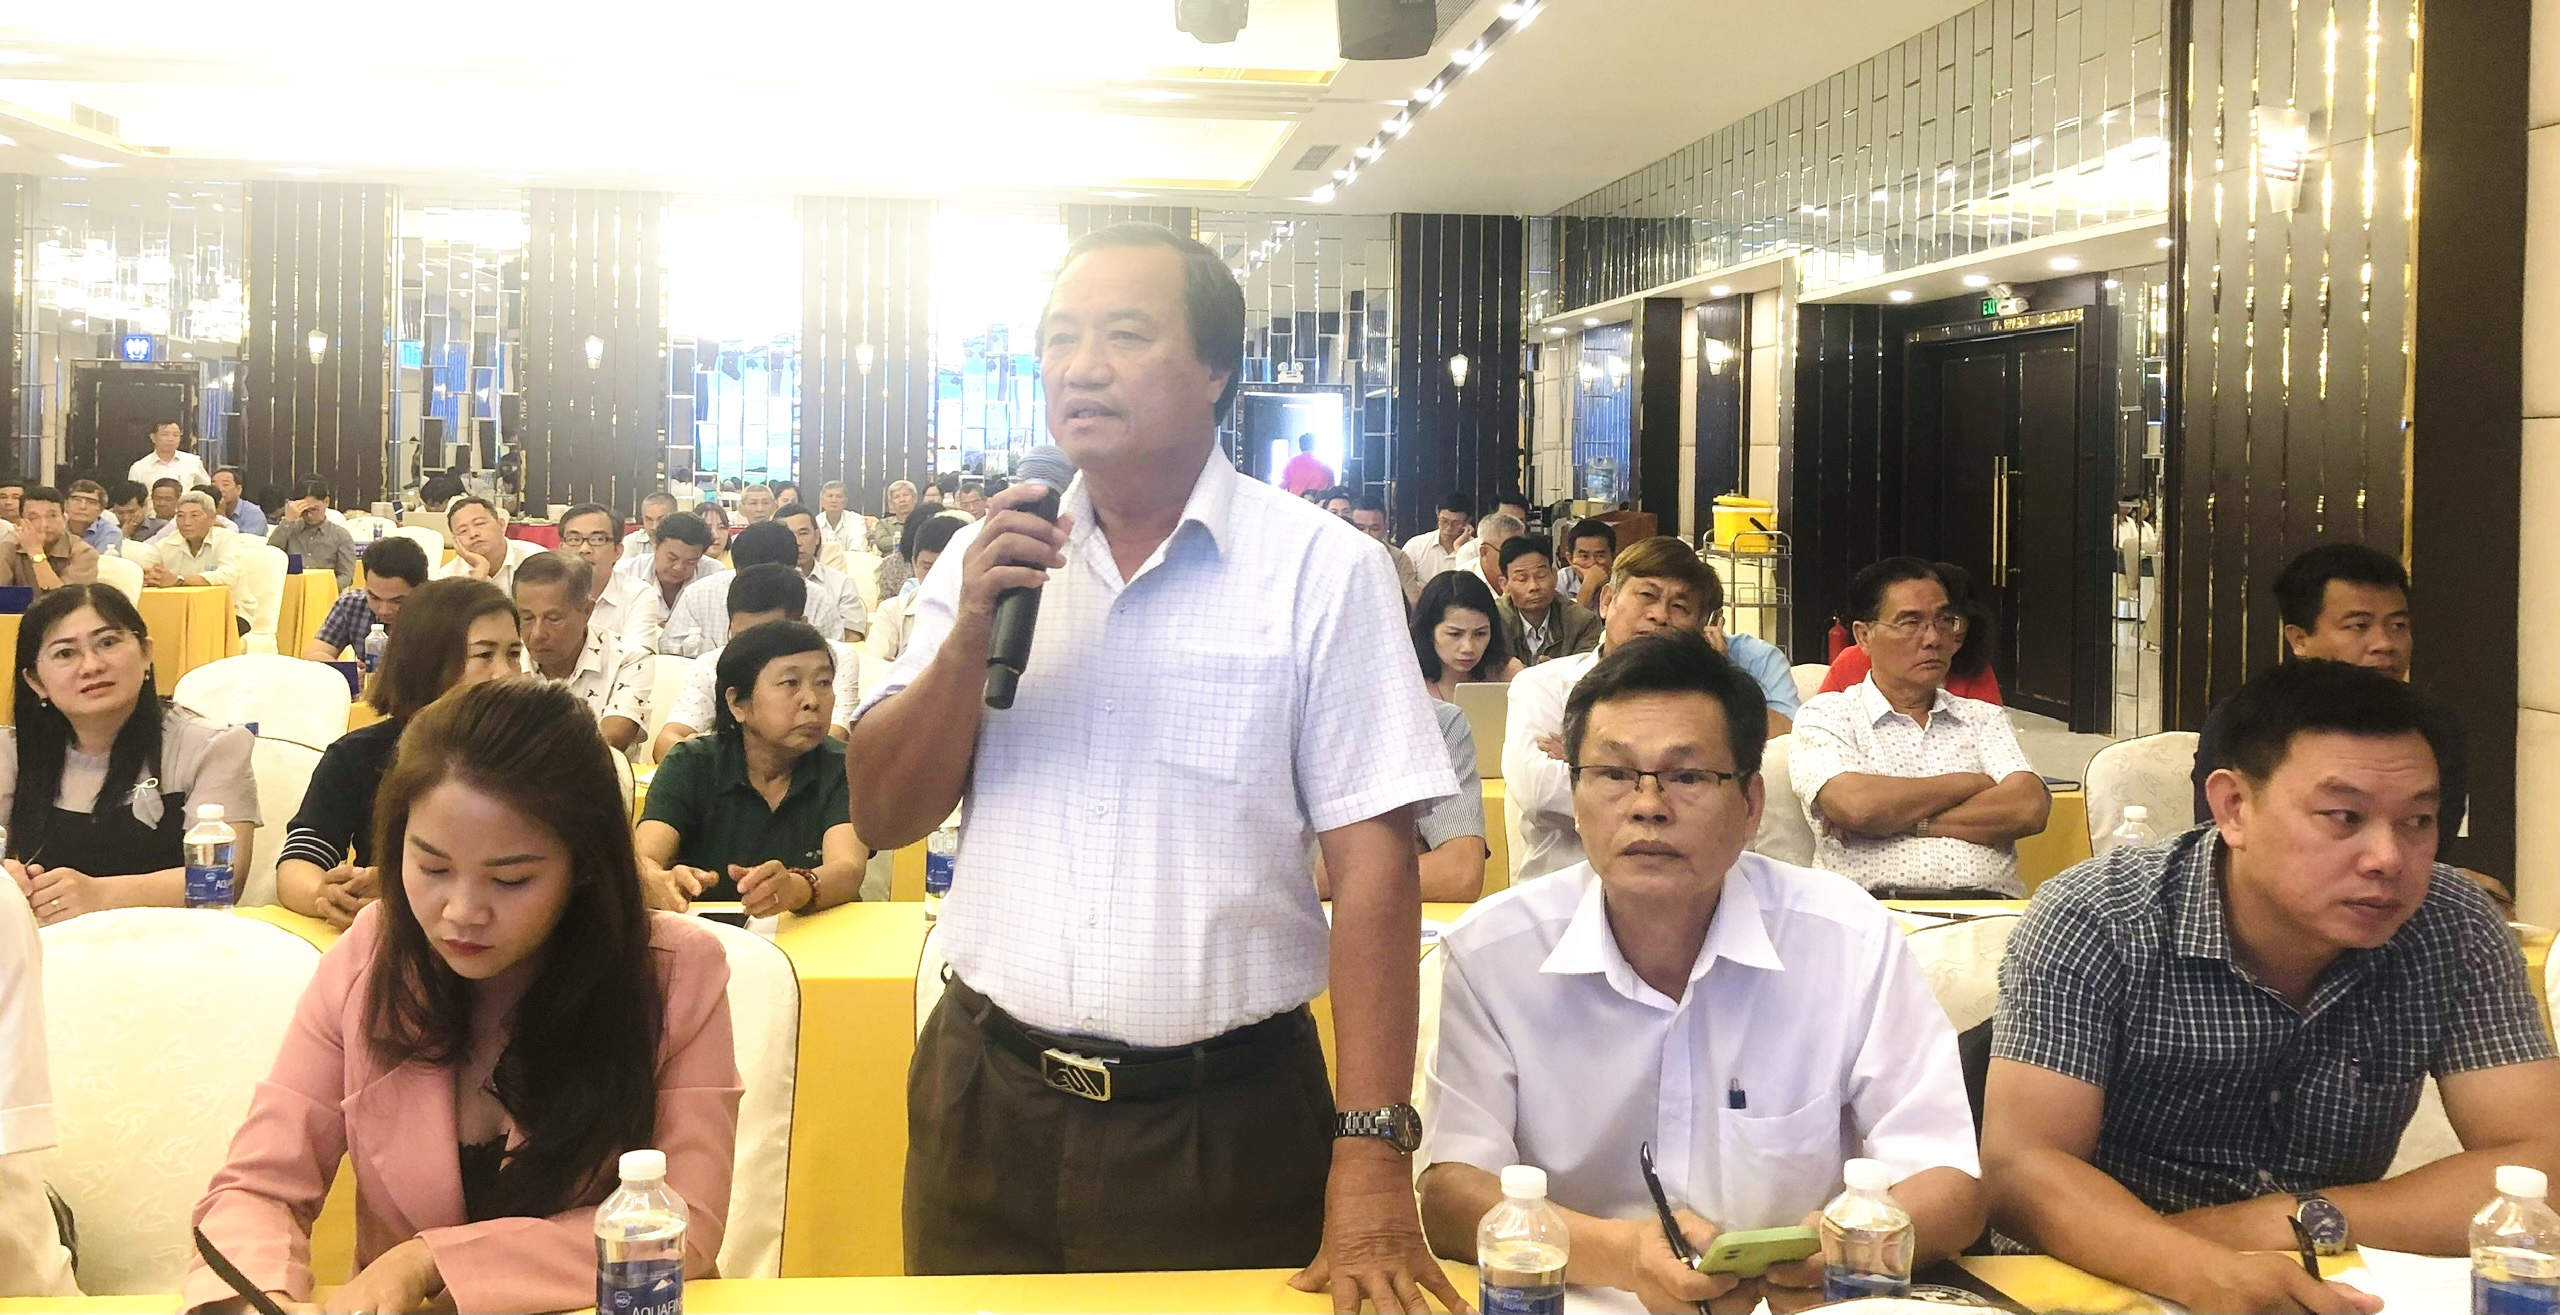 Đây là lần đầu tiên tỉnh Đồng Nai tổ chức hội nghị quy mô lấy ý kiến nông dân, nhà quản lý, nhà khoa học để phát triển ngành nông nghiệp.